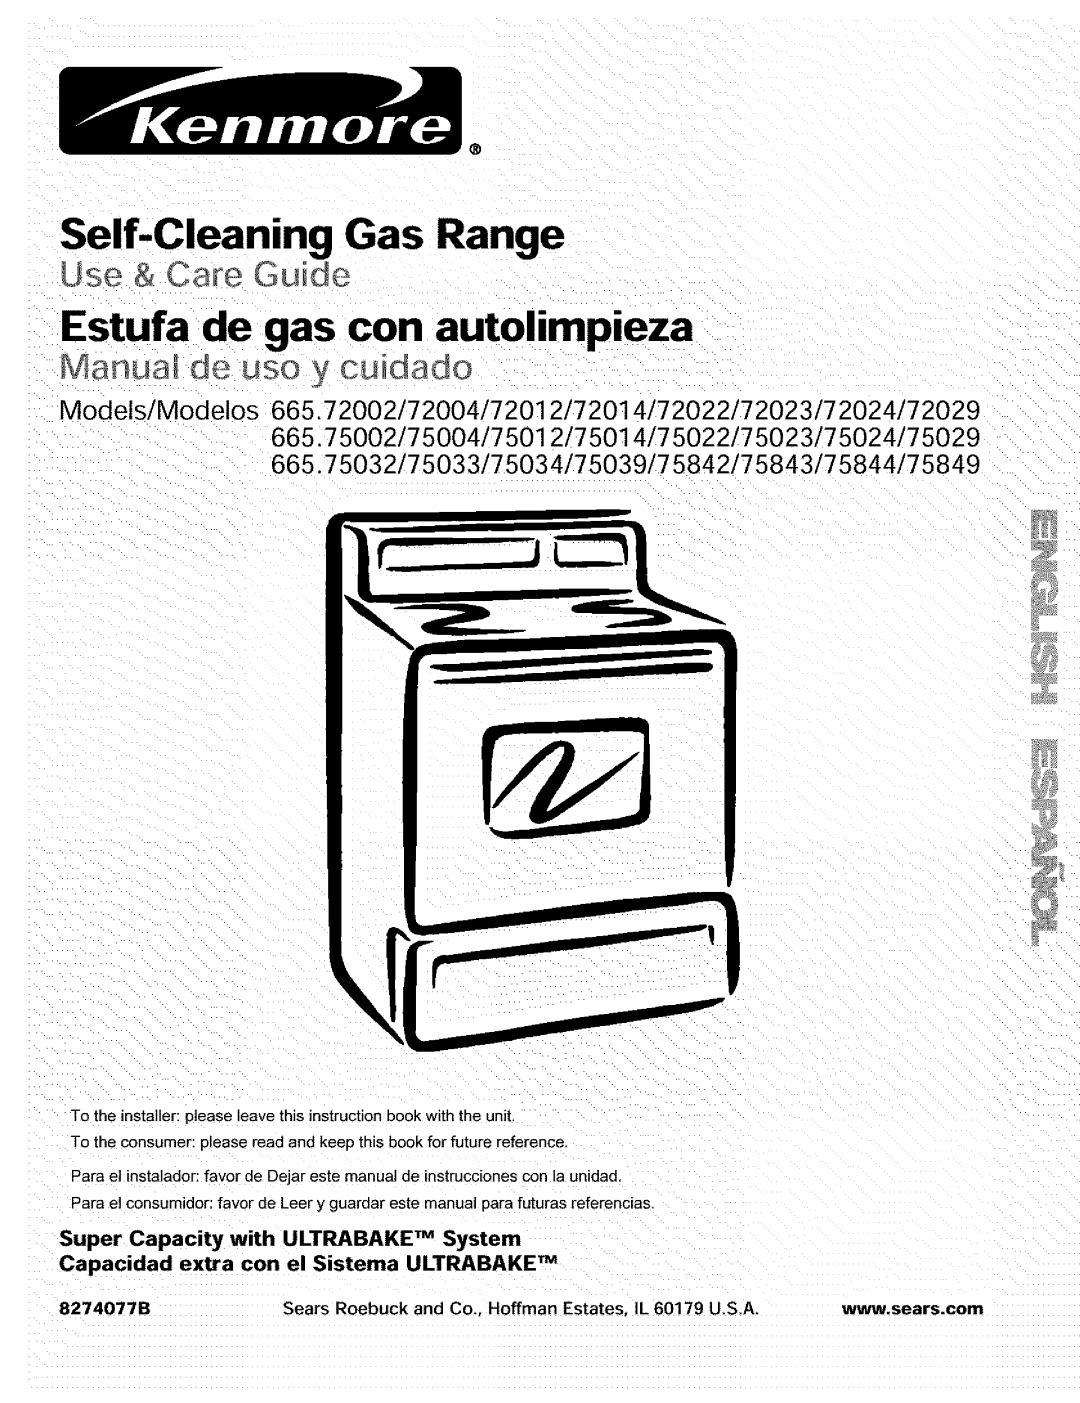 Kenmore 665.72002 manual Self-CleaningGas Range, Estufa de gas con autolimpieza, Use & Care Guide, 8274077B 